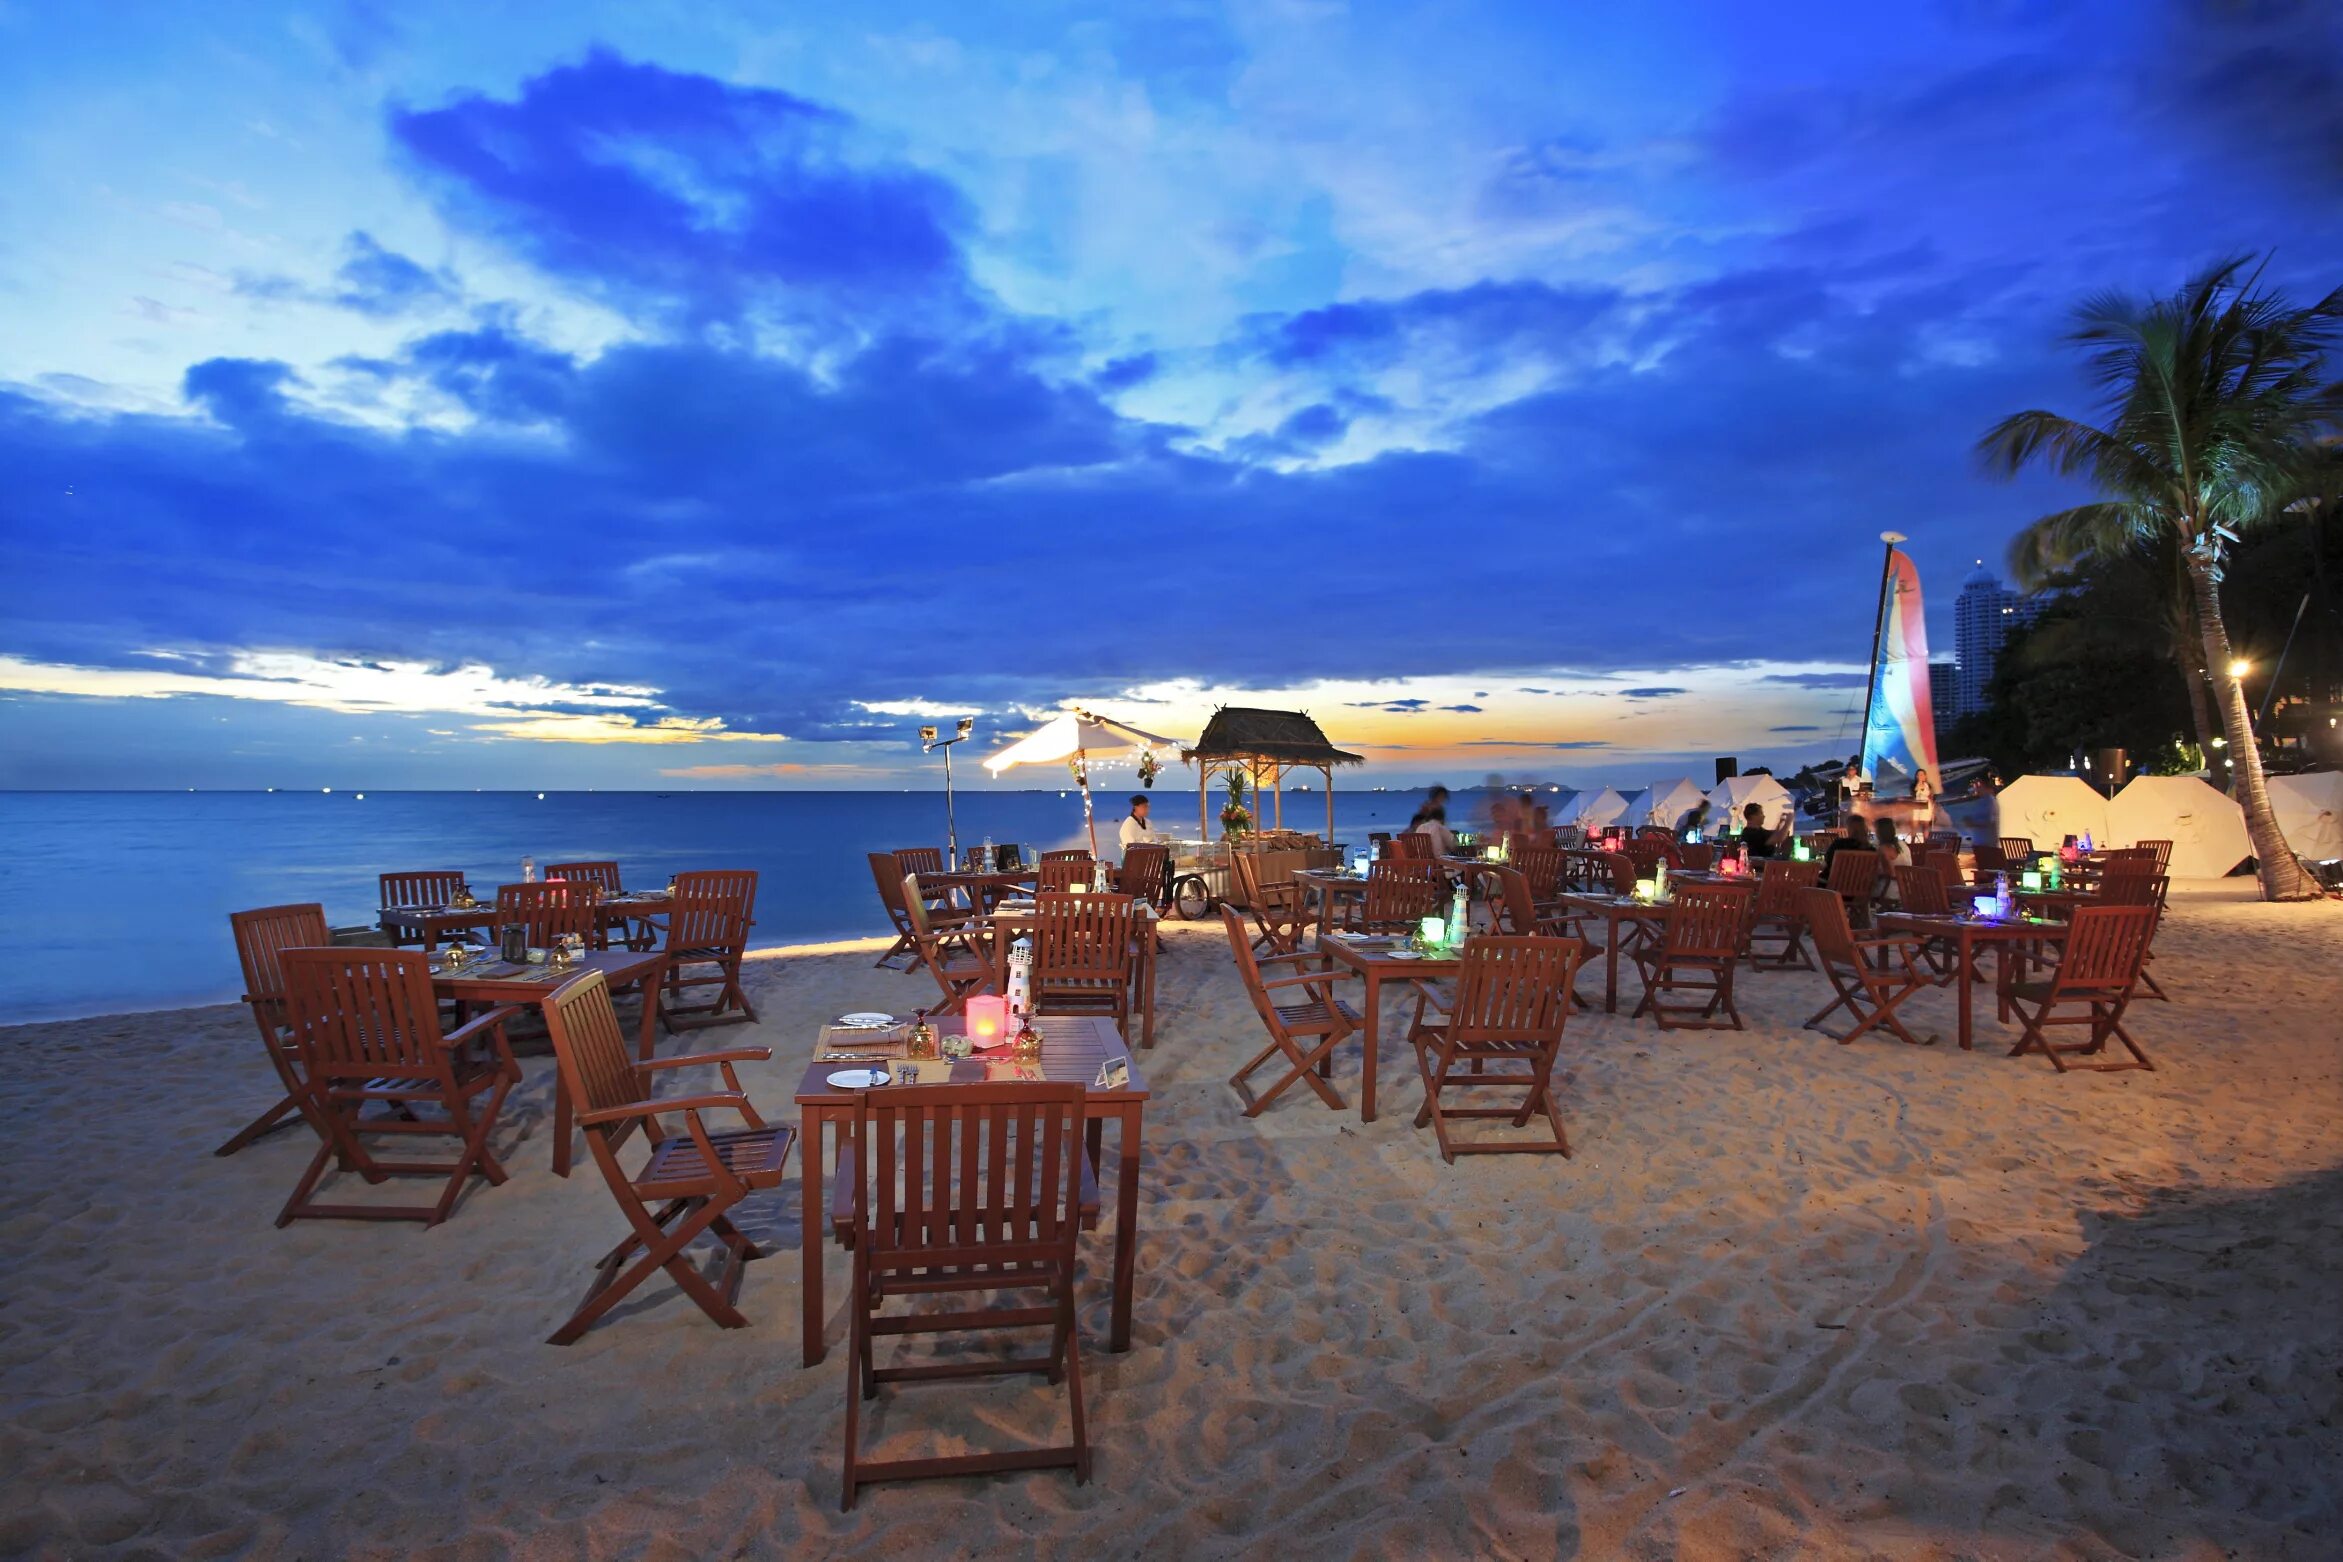 Купить путевку в паттайю. Тайланд Паттайя. Centara Grand Тайланд. Centara Grand Mirage Beach Resort Pattaya. Таиланд курорт Паттайя.